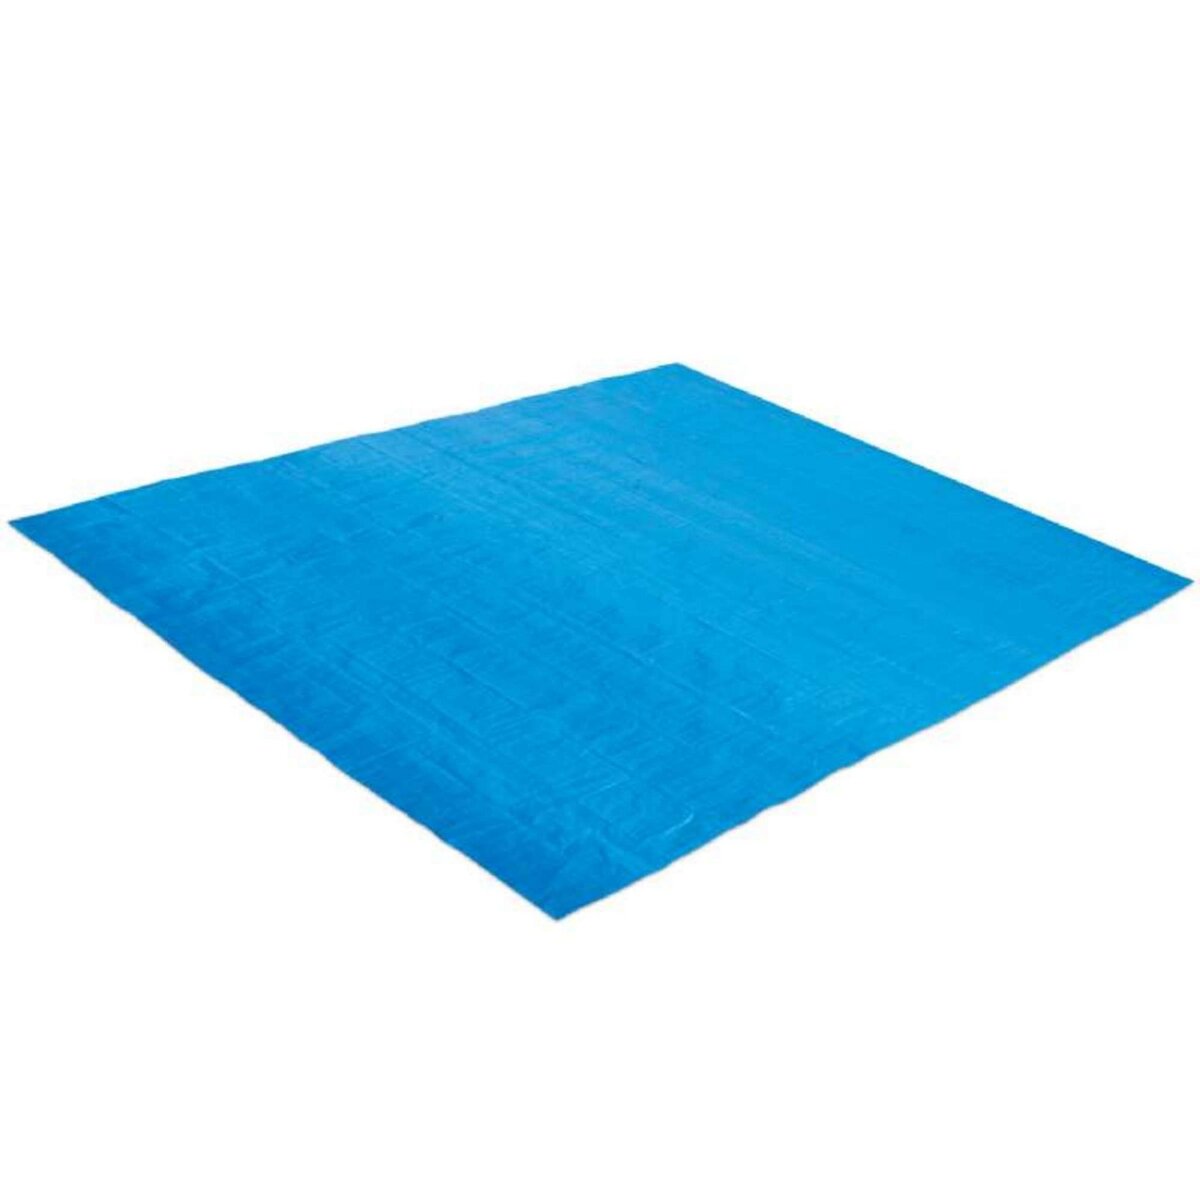  Tapis de sol bleu pour piscine Summer Waves 4,82 x 4,82 m pour piscine Ø 3,96 m - 4,27 m